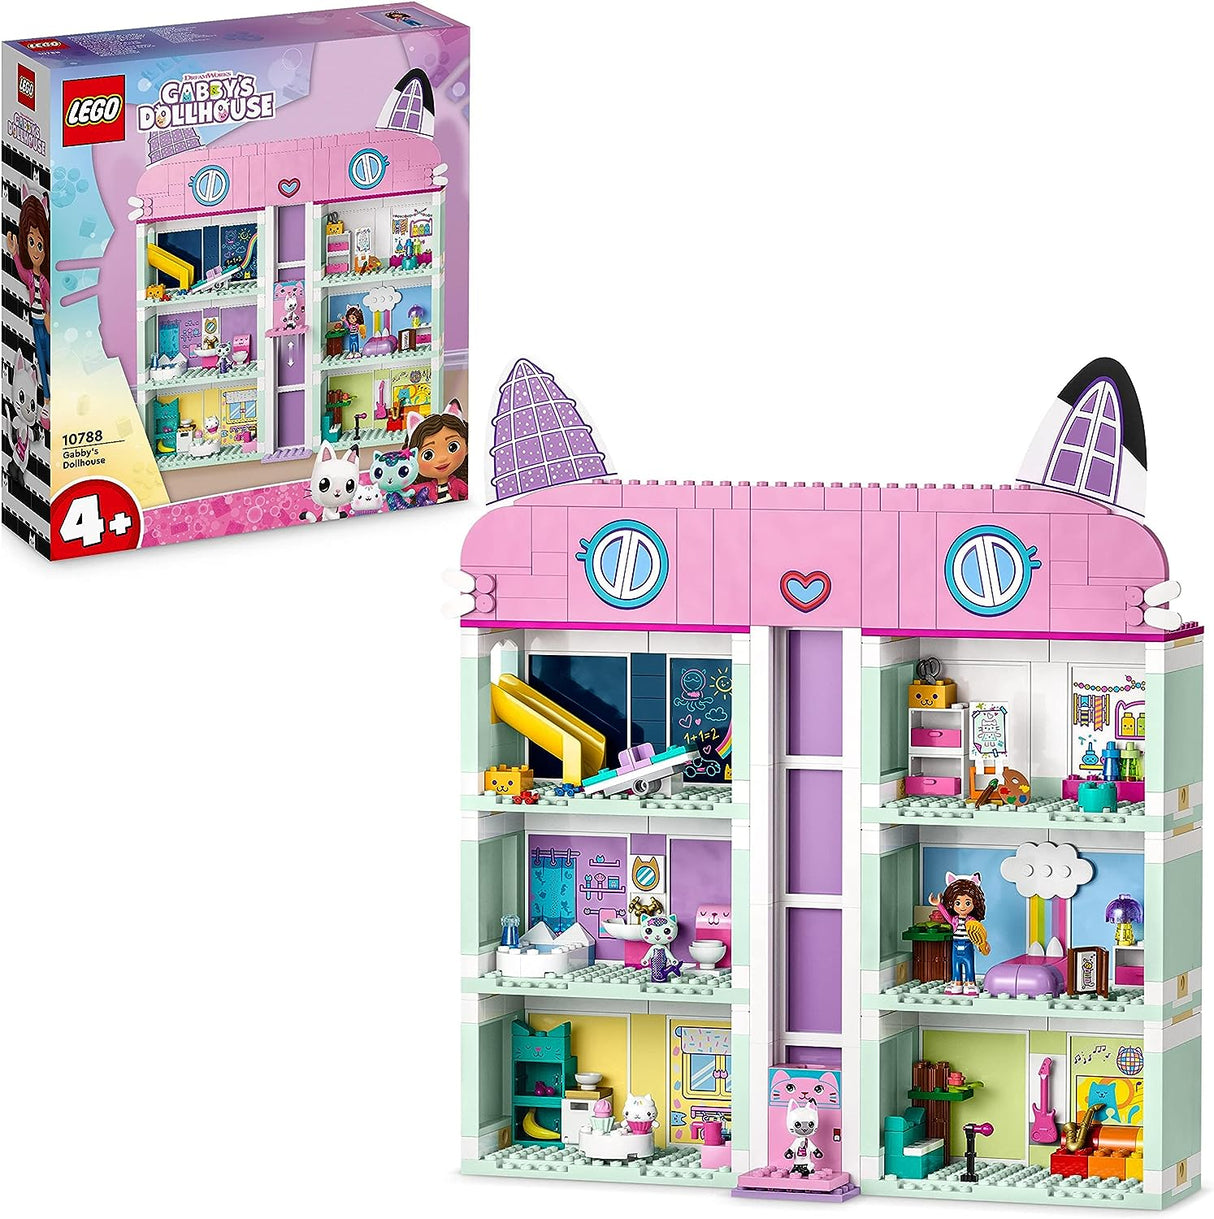 LEGO Gabby's Dollhouse 10788 - Casa das Bonecas de Gabby